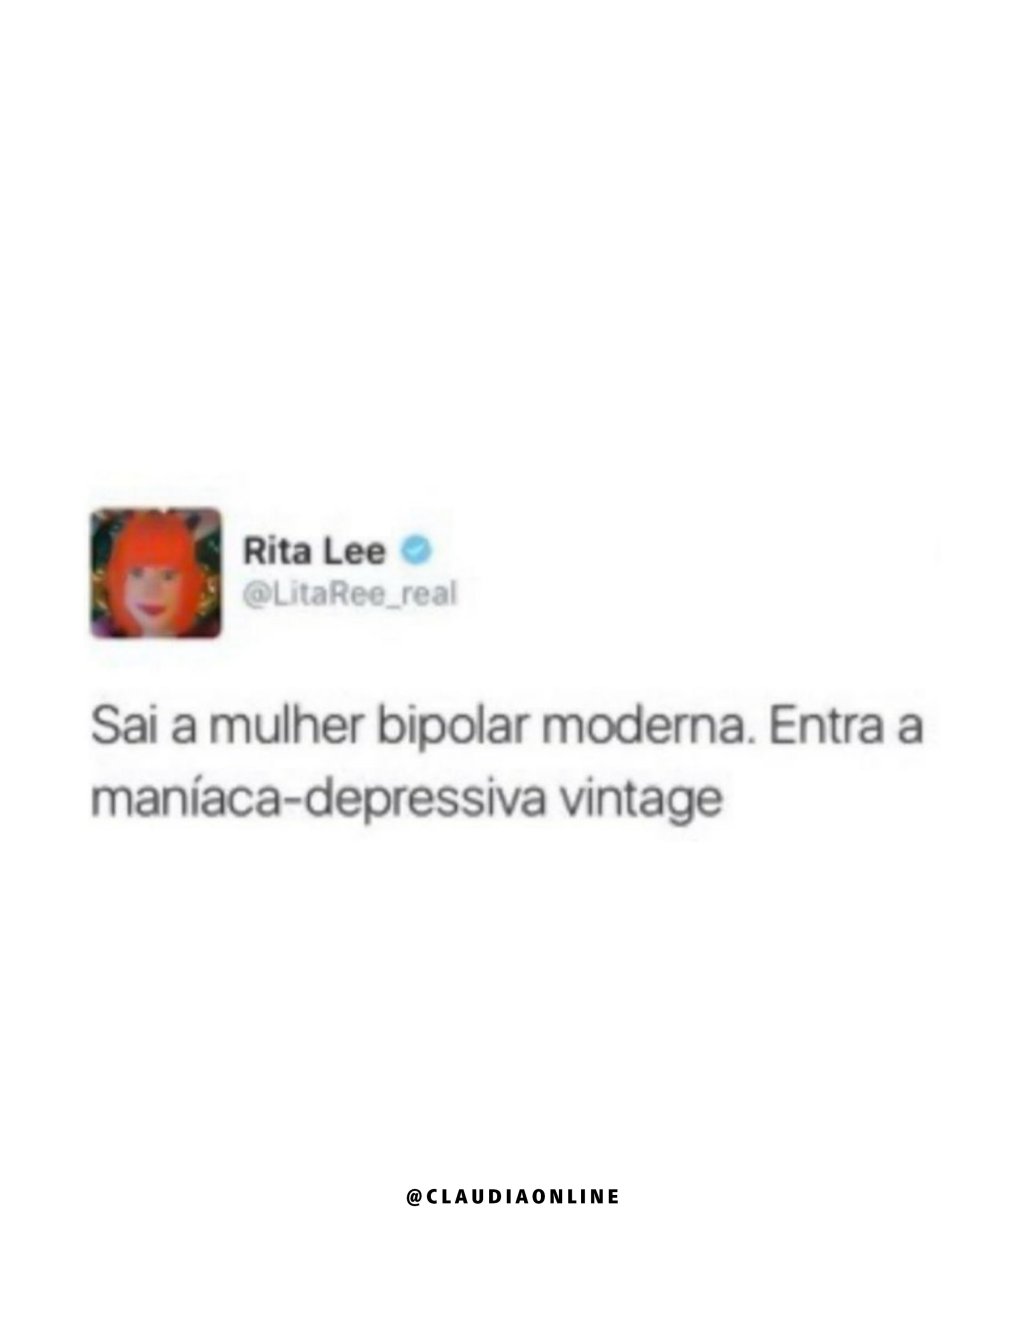 Os melhores momentos de Rita Lee no Twitter.